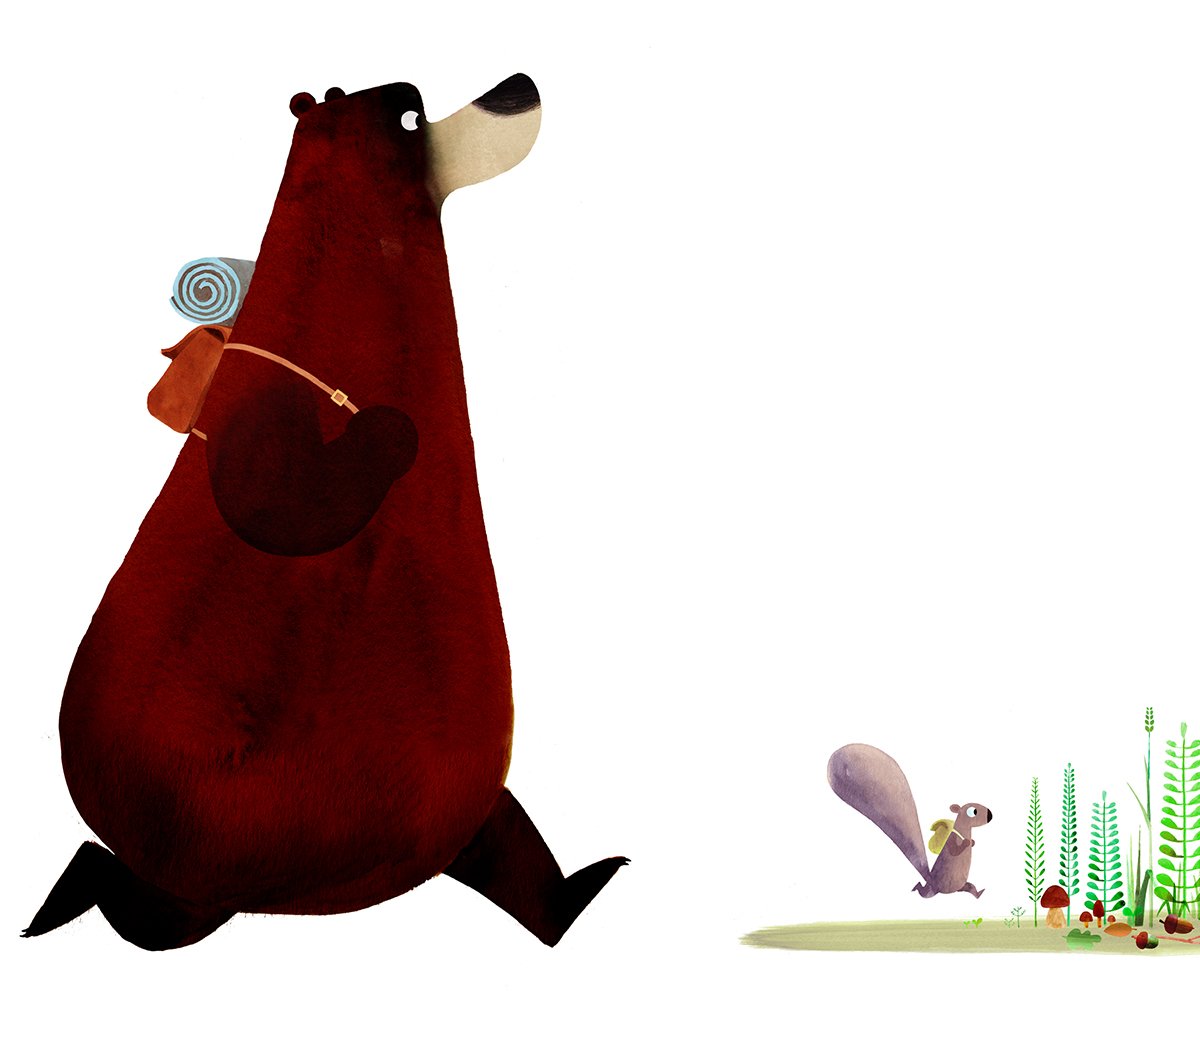 steve-small-bear-and-squirrel-running-illustration.jpg